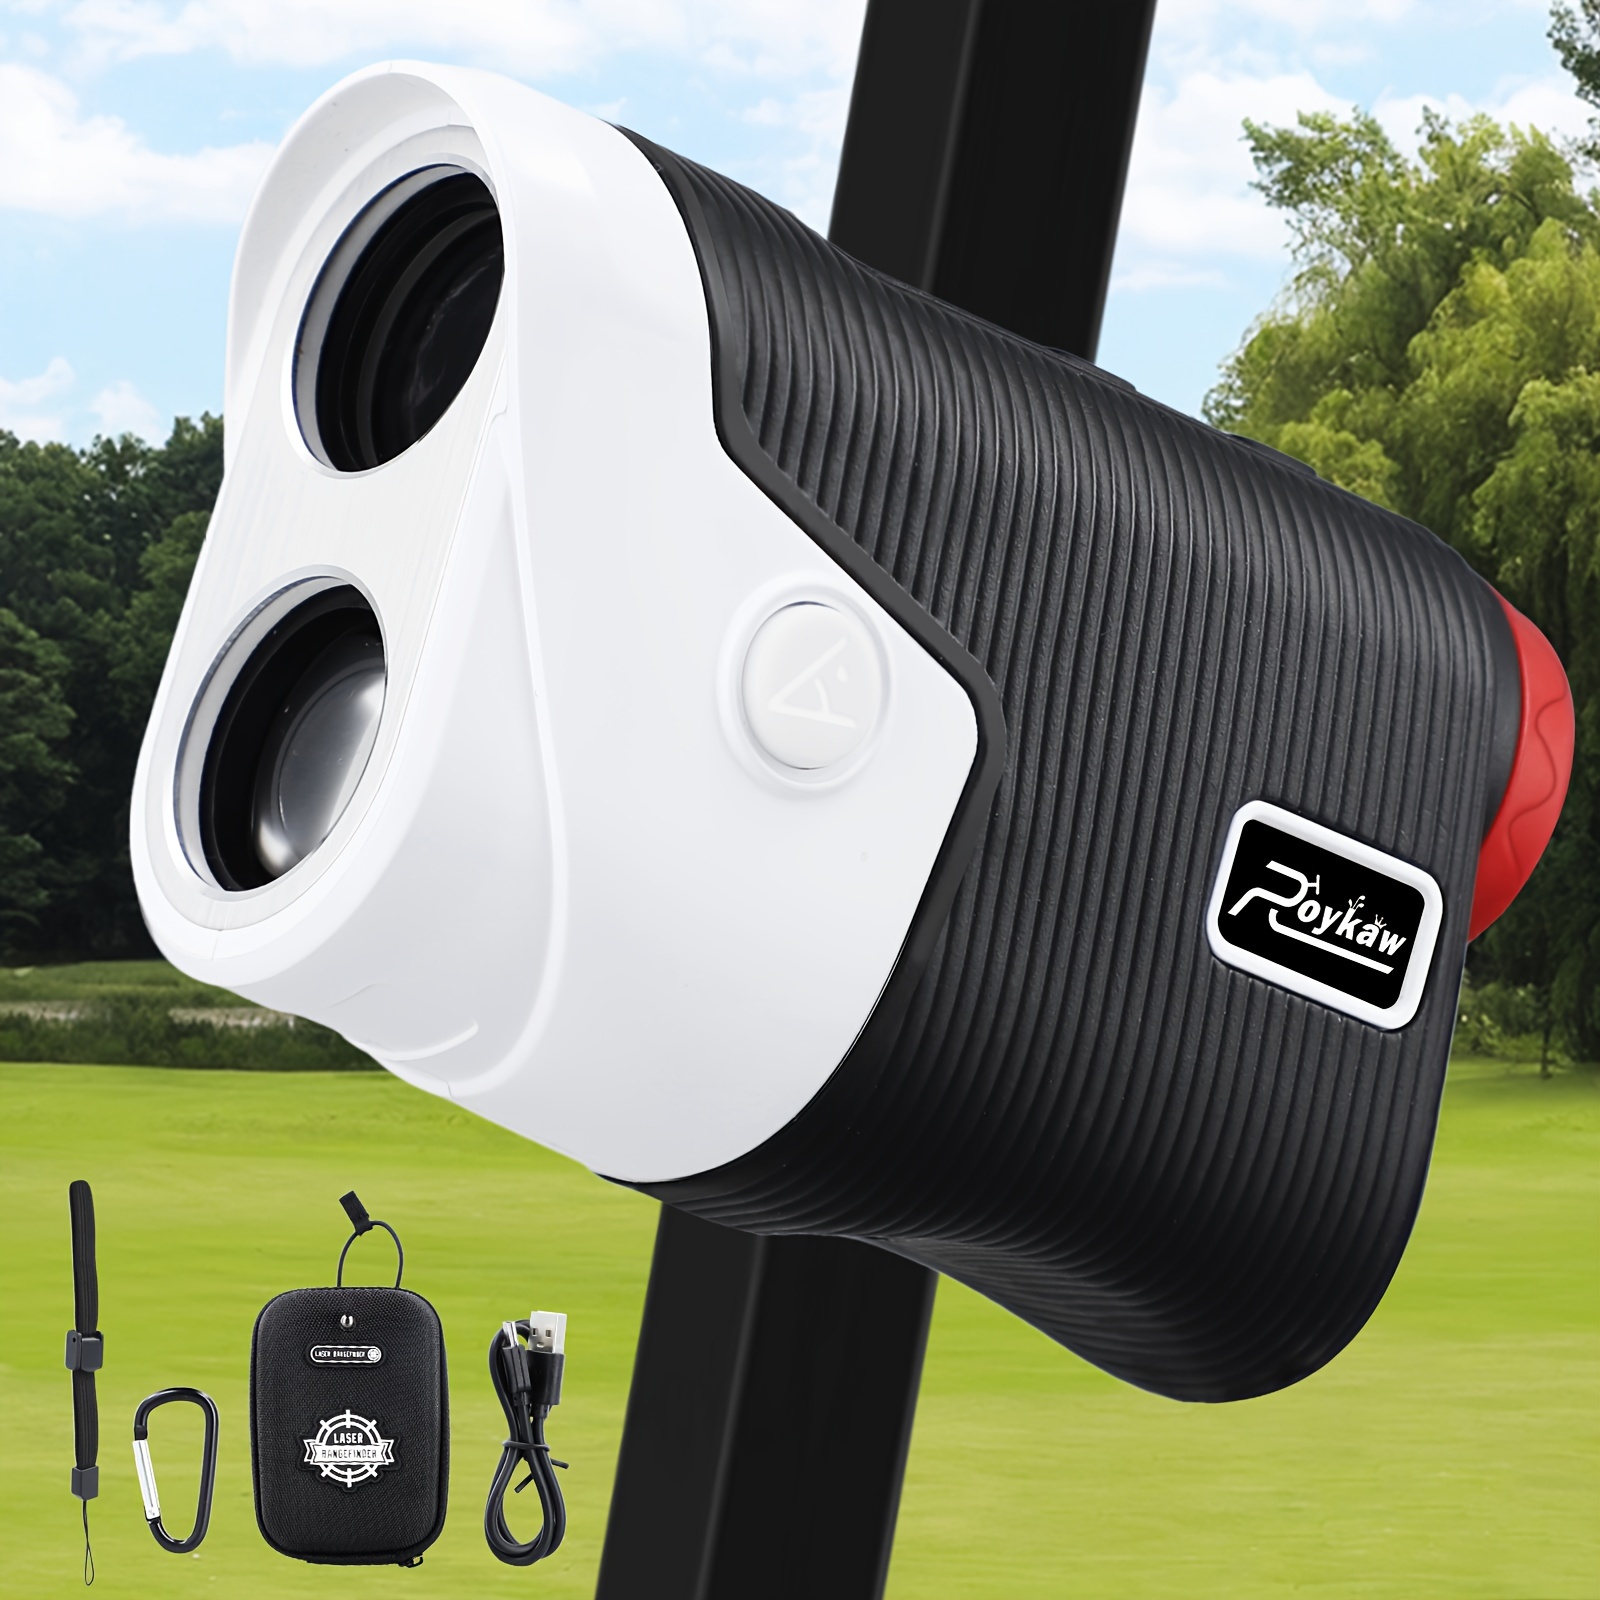 Hawkray - Telémetro láser de golf de 700 yardas con pendiente, telémetro  láser de golf recargable por USB con adquisición de bandera, interruptor de